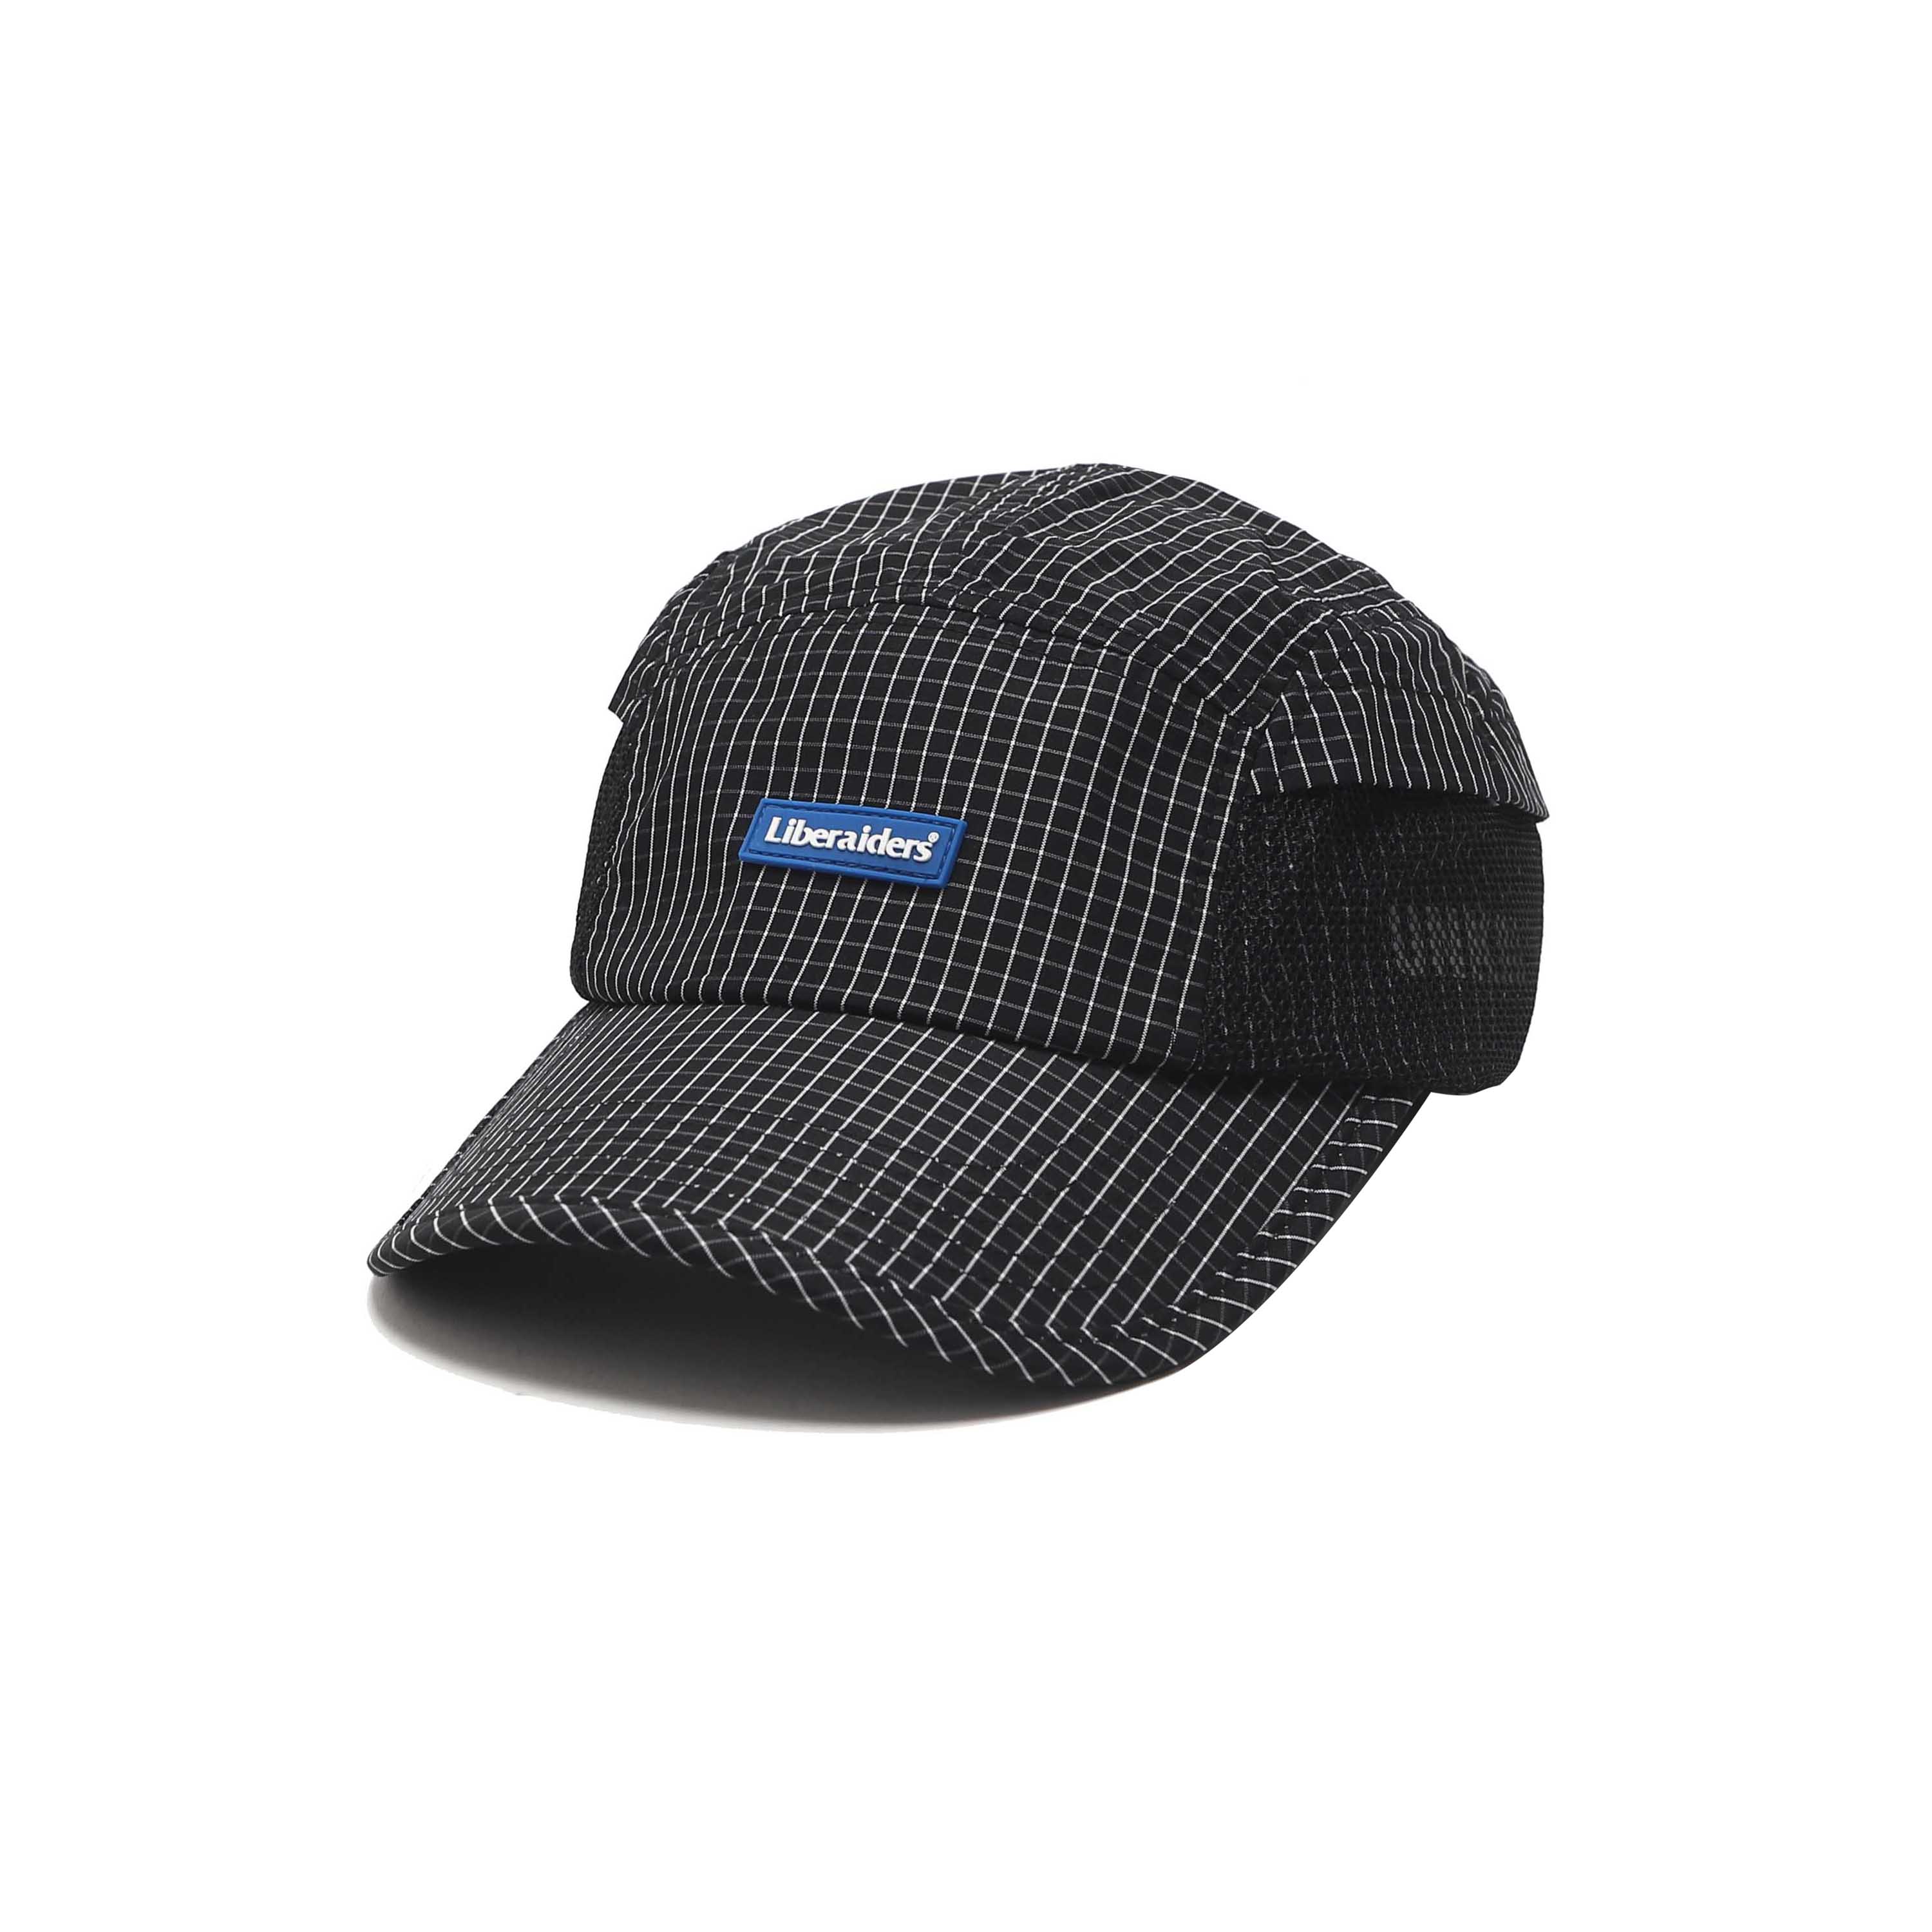 GRID CLOTH CAP - BLACK